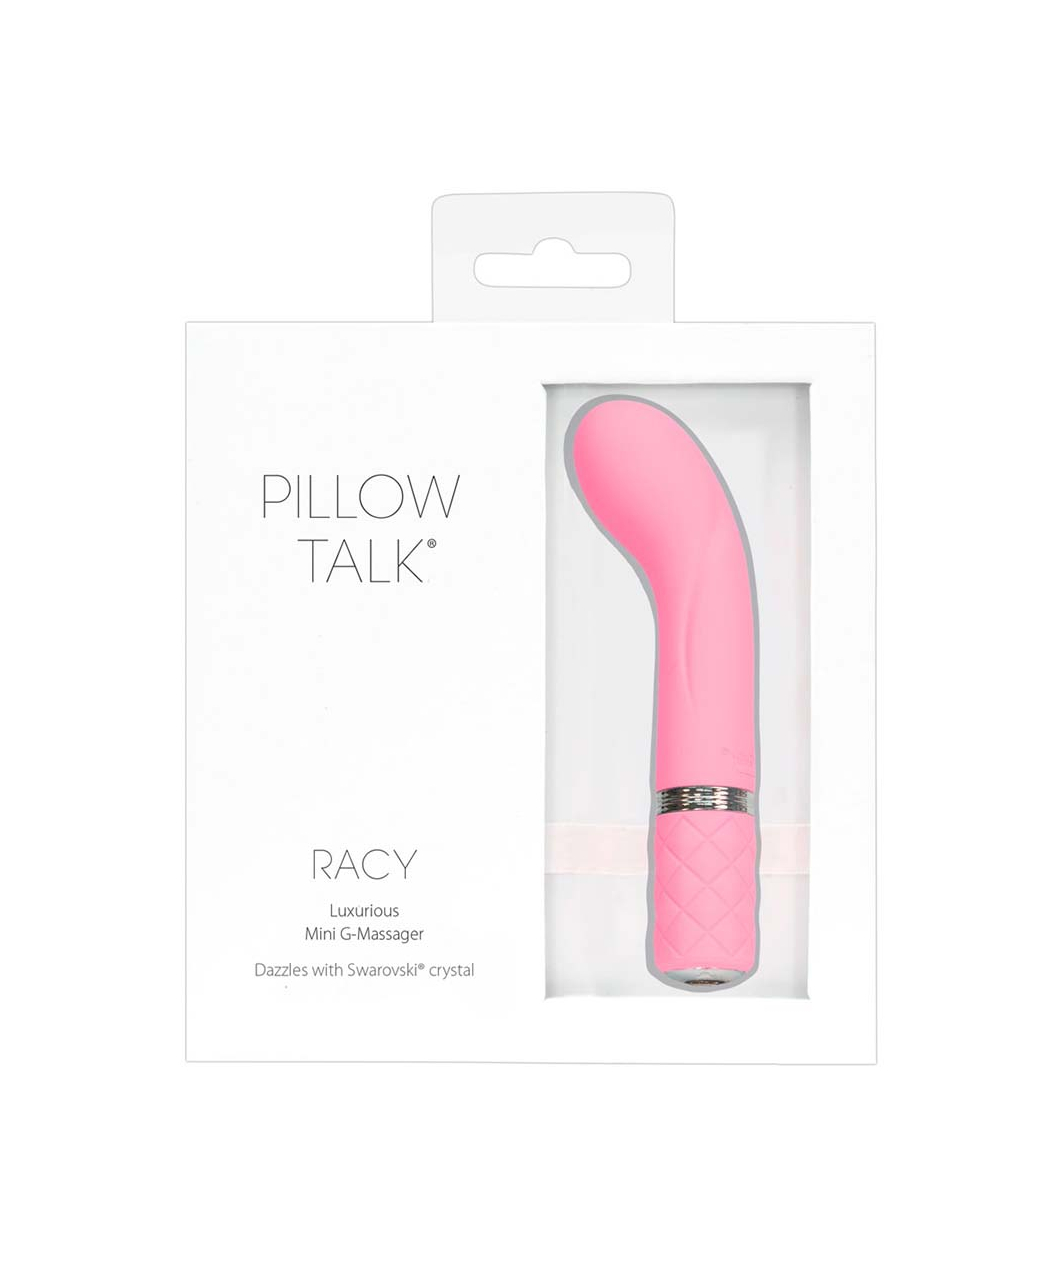 Pillow Talk Racy vibrators